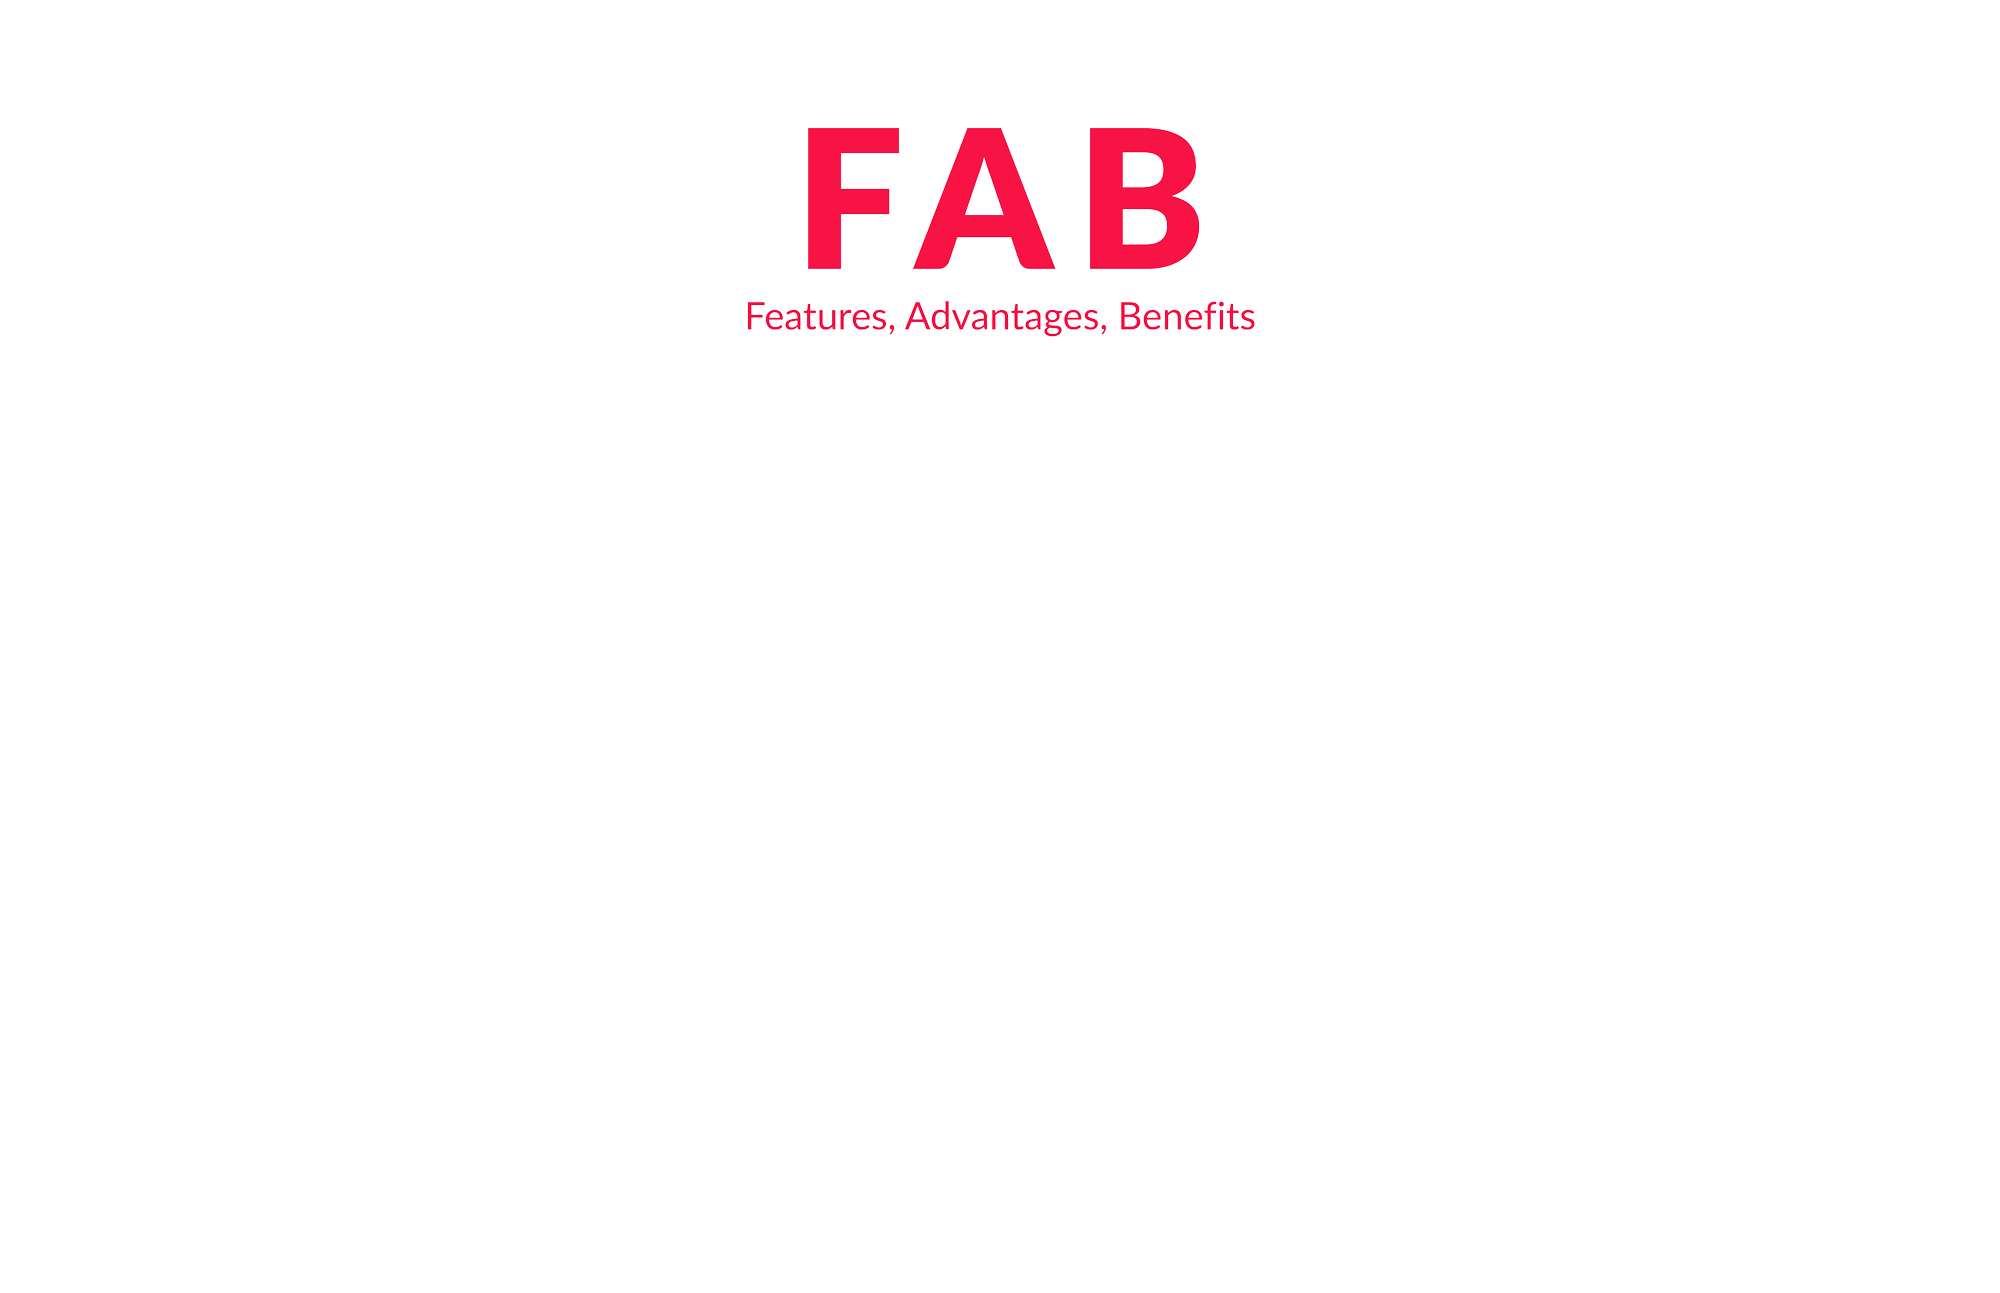 FAB Features, Advantages, Benefits